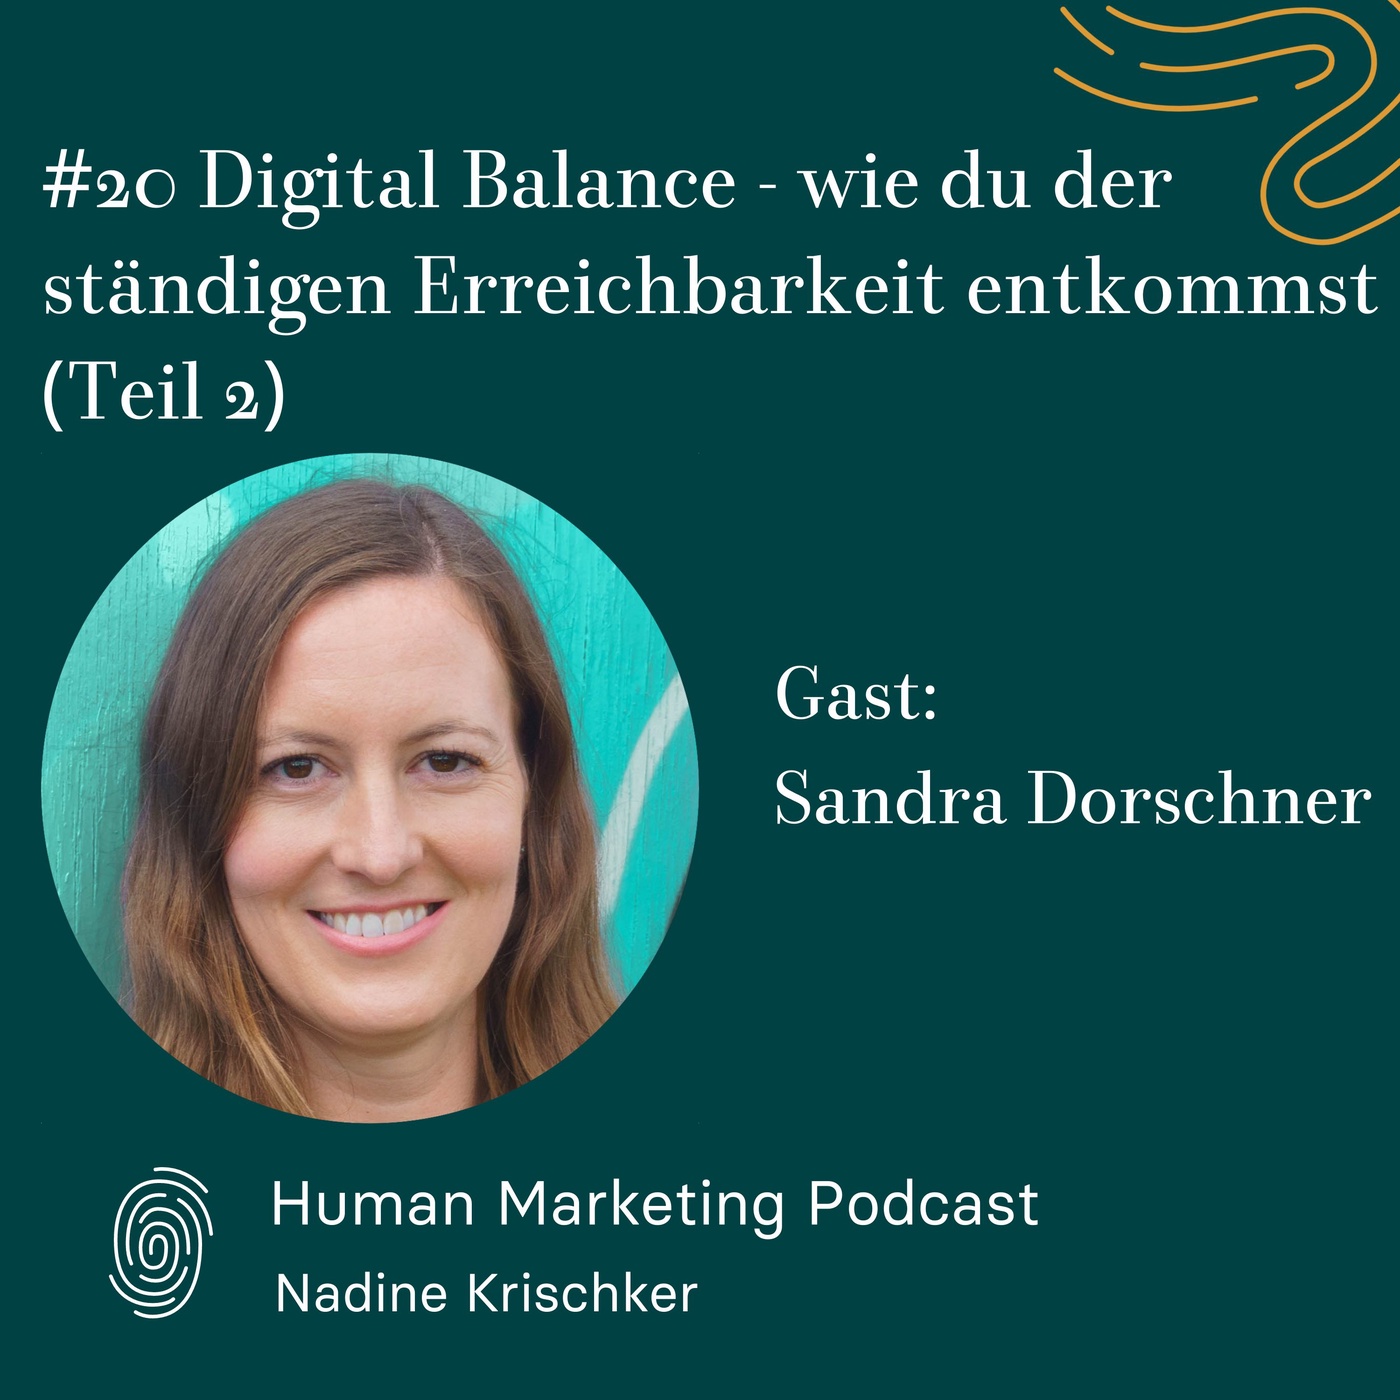 020 Digital Balance - wie du der ständigen Erreichbarkeit entkommst, Teil 2 (Gast: Sandra Dorschner)